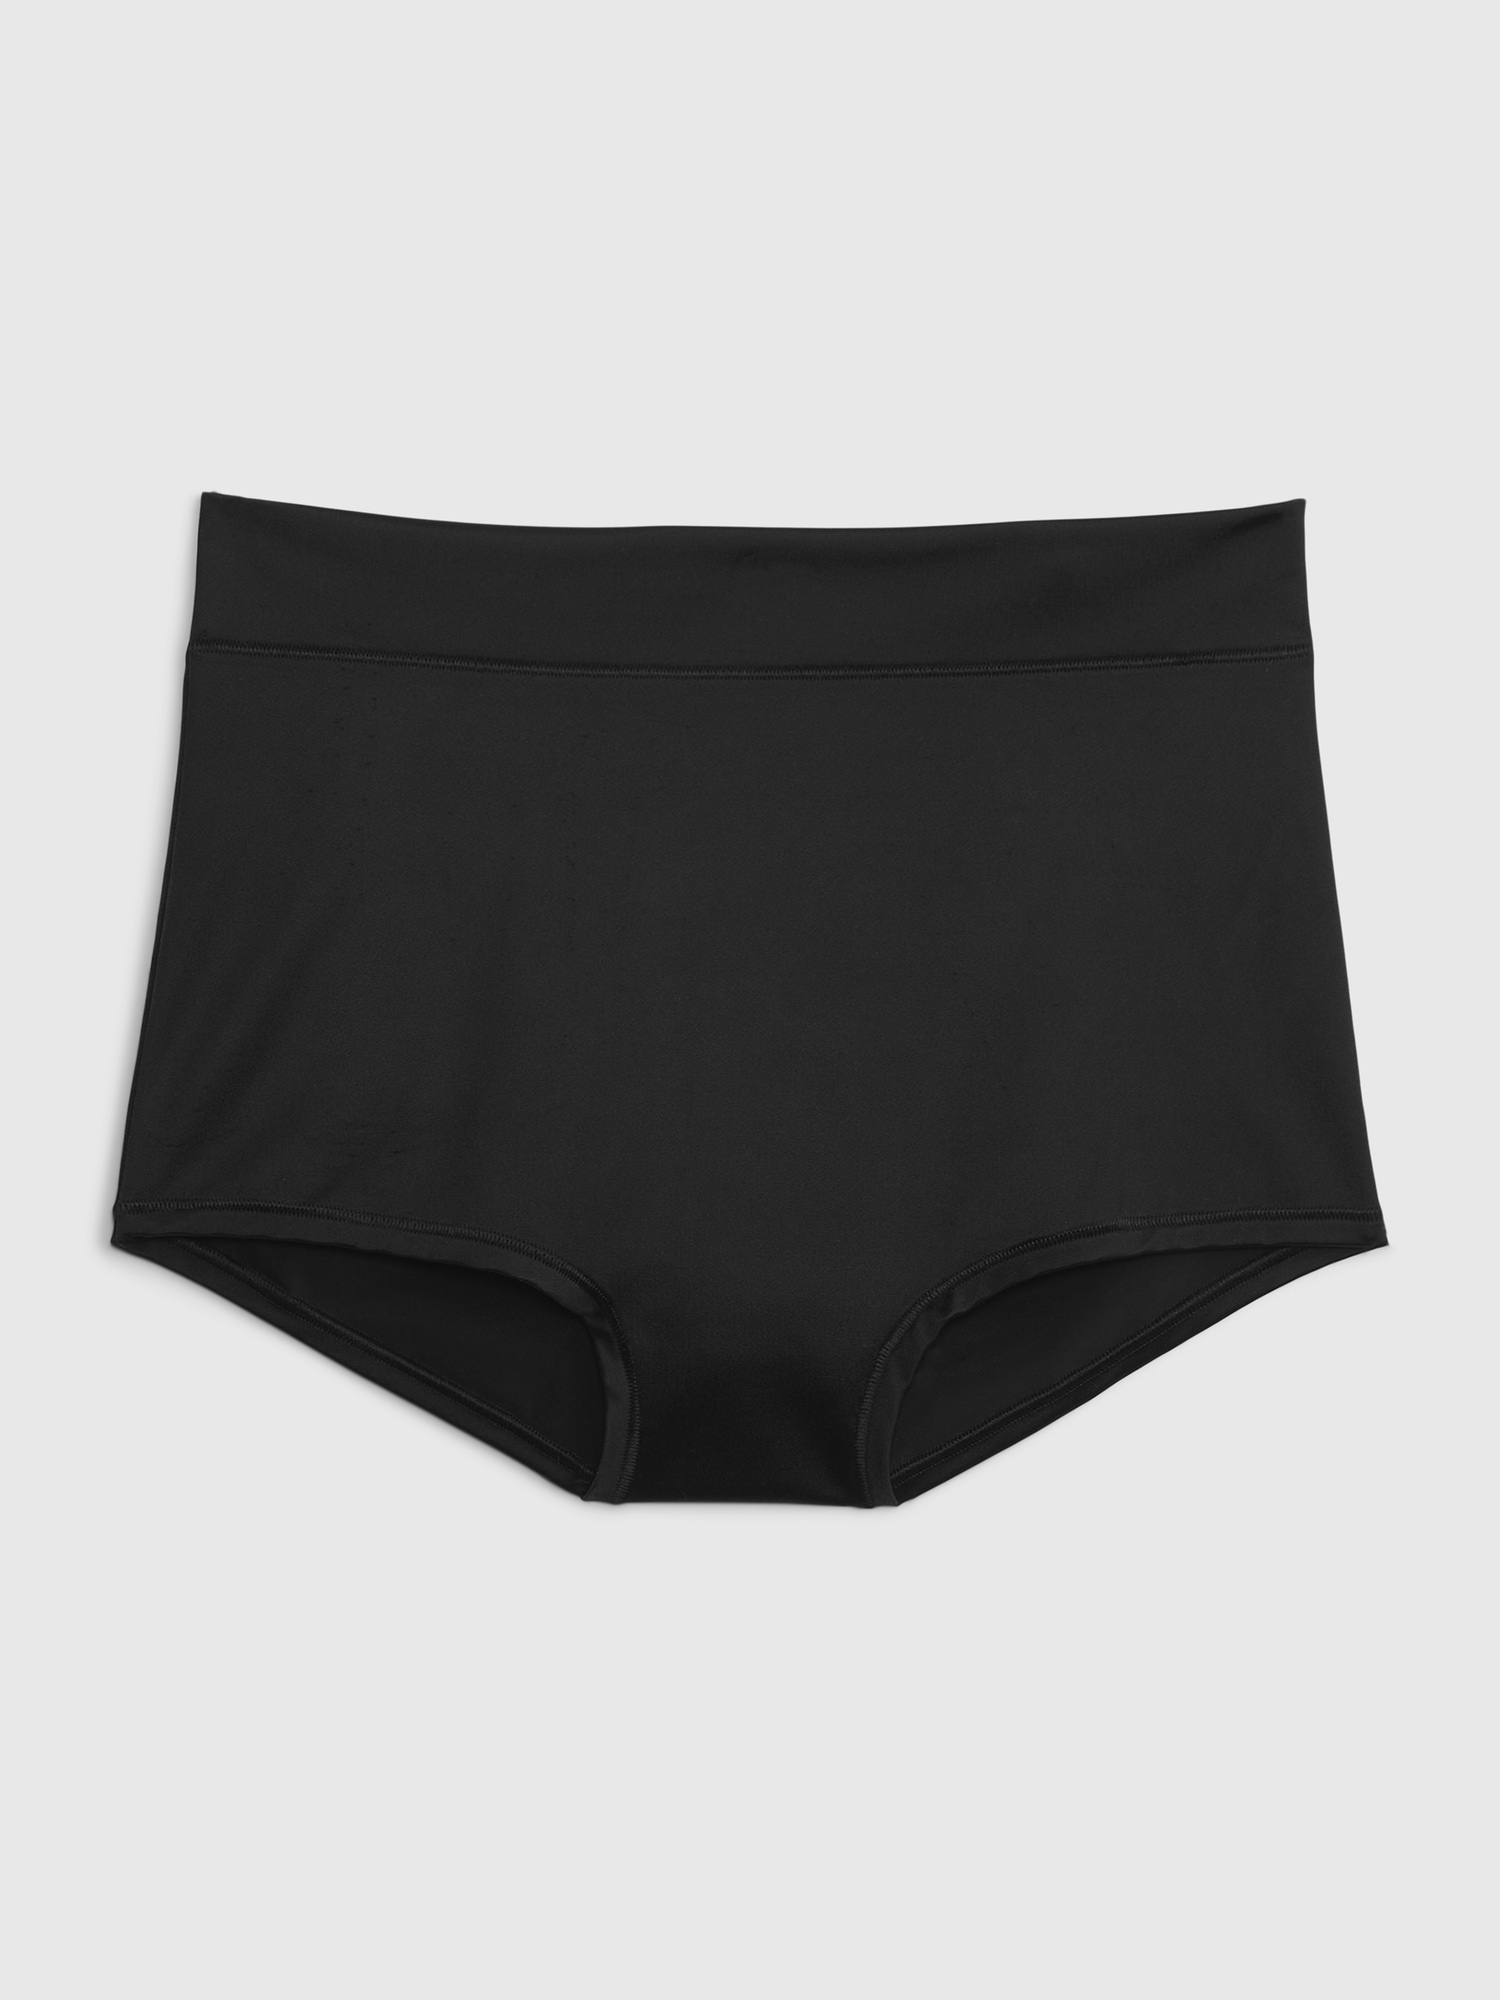 Short Underwear For Women